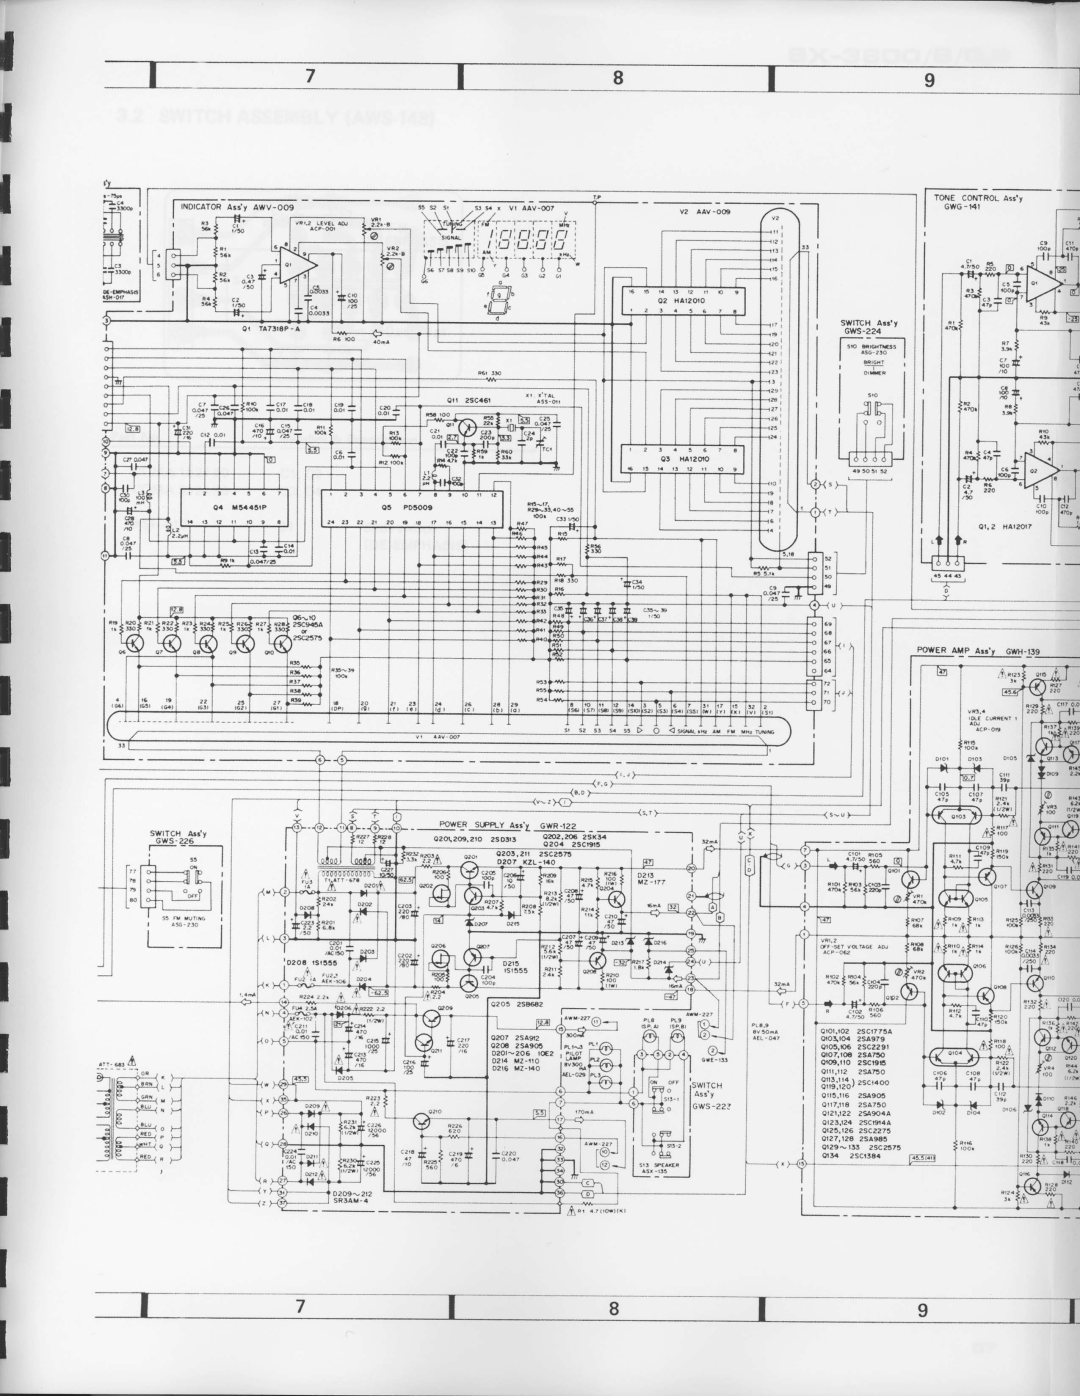 Pioneer SX-3800 manual lr-l--.q.iliffi 